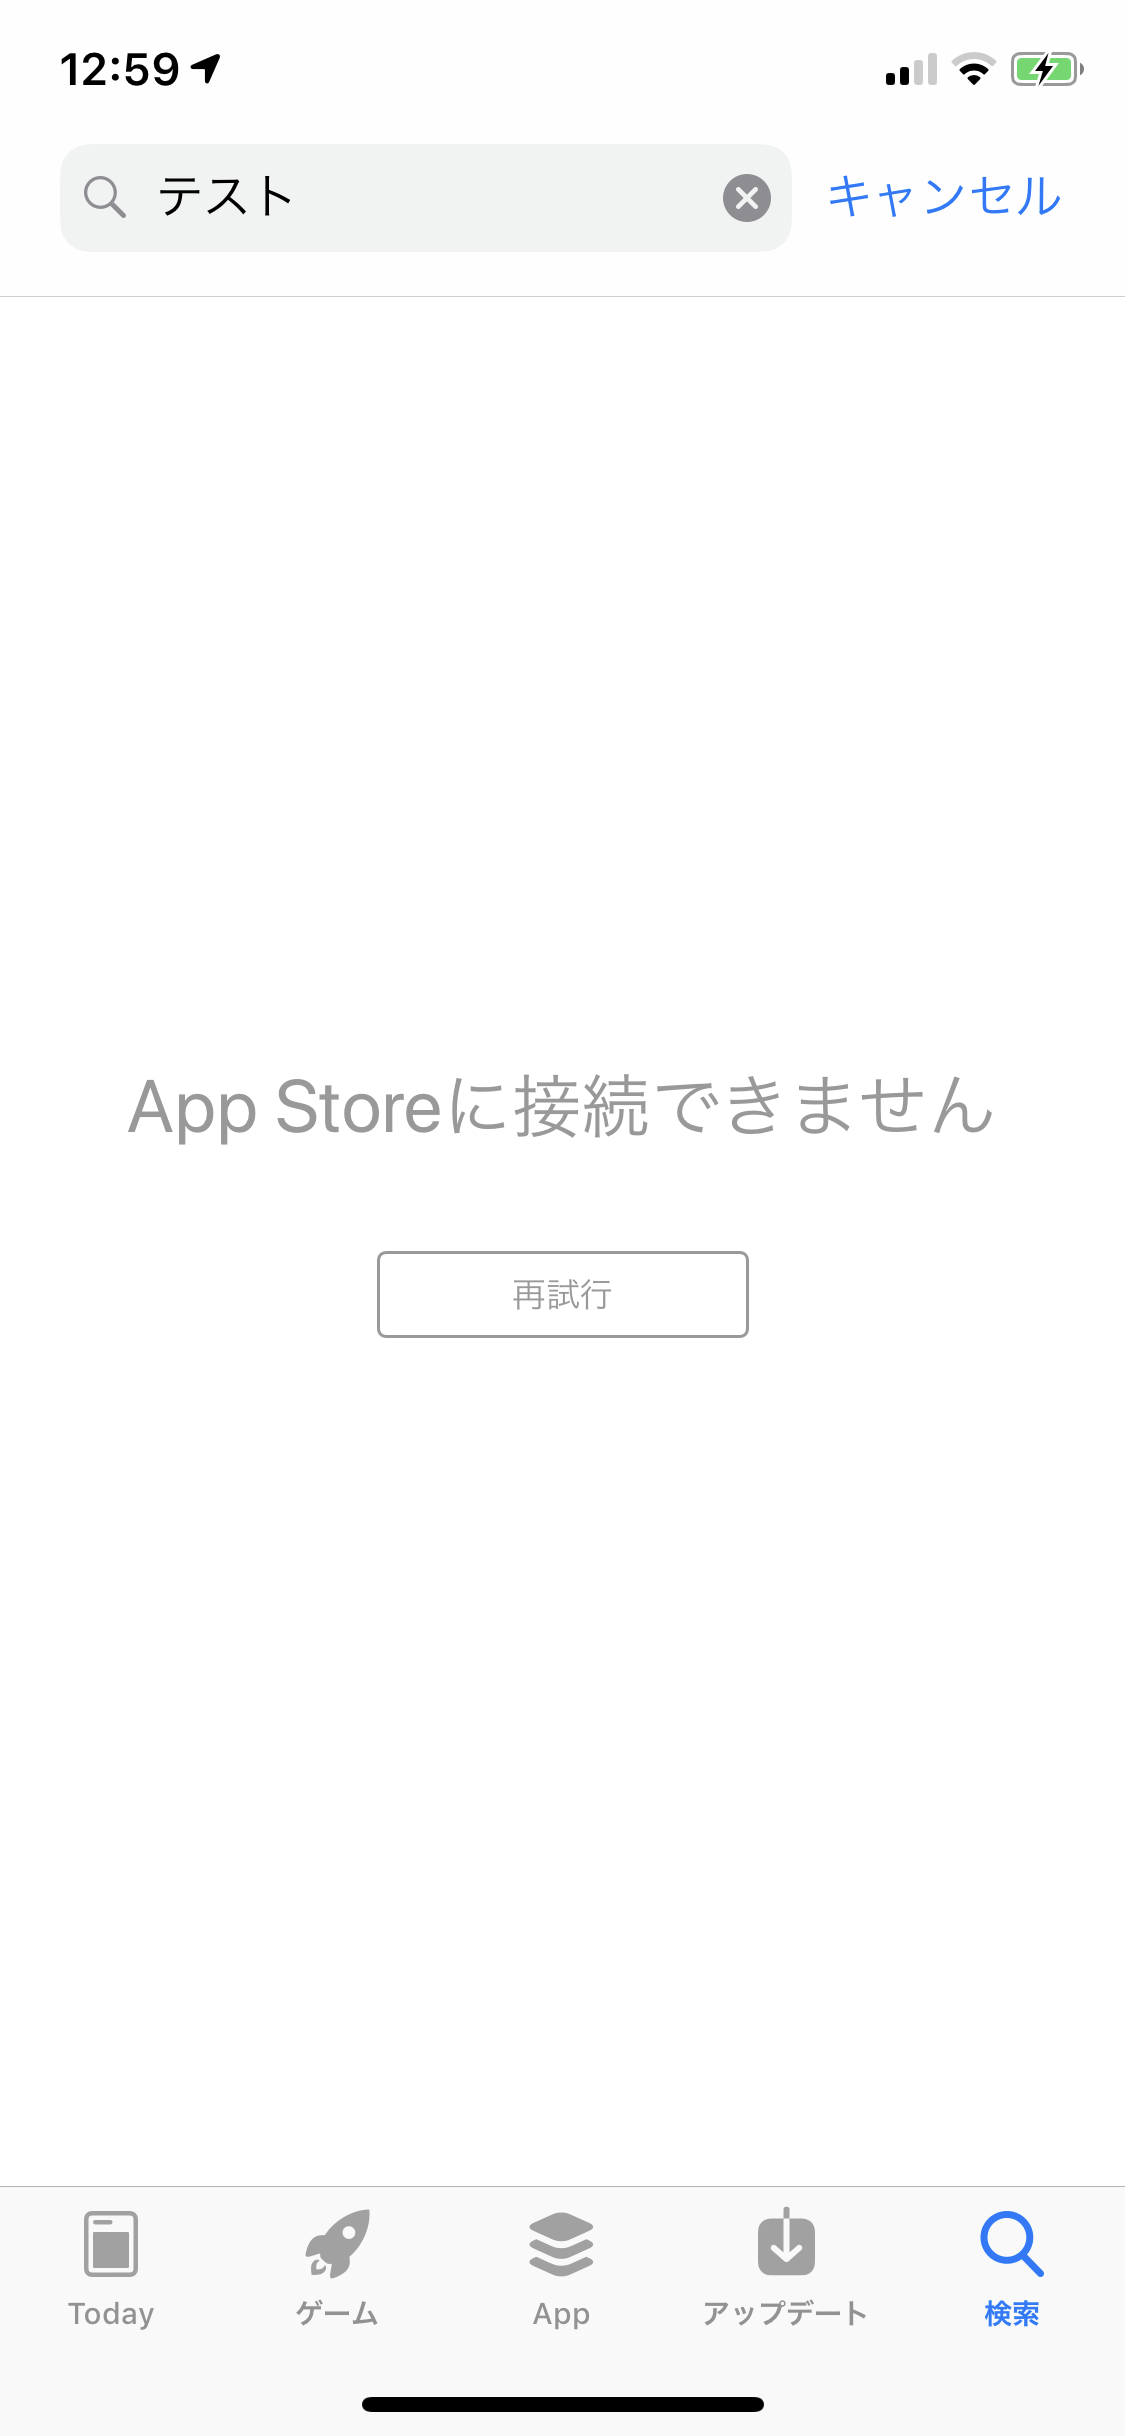 【復旧済み】｢App Store｣で正常に検索出来ない問題が発生中